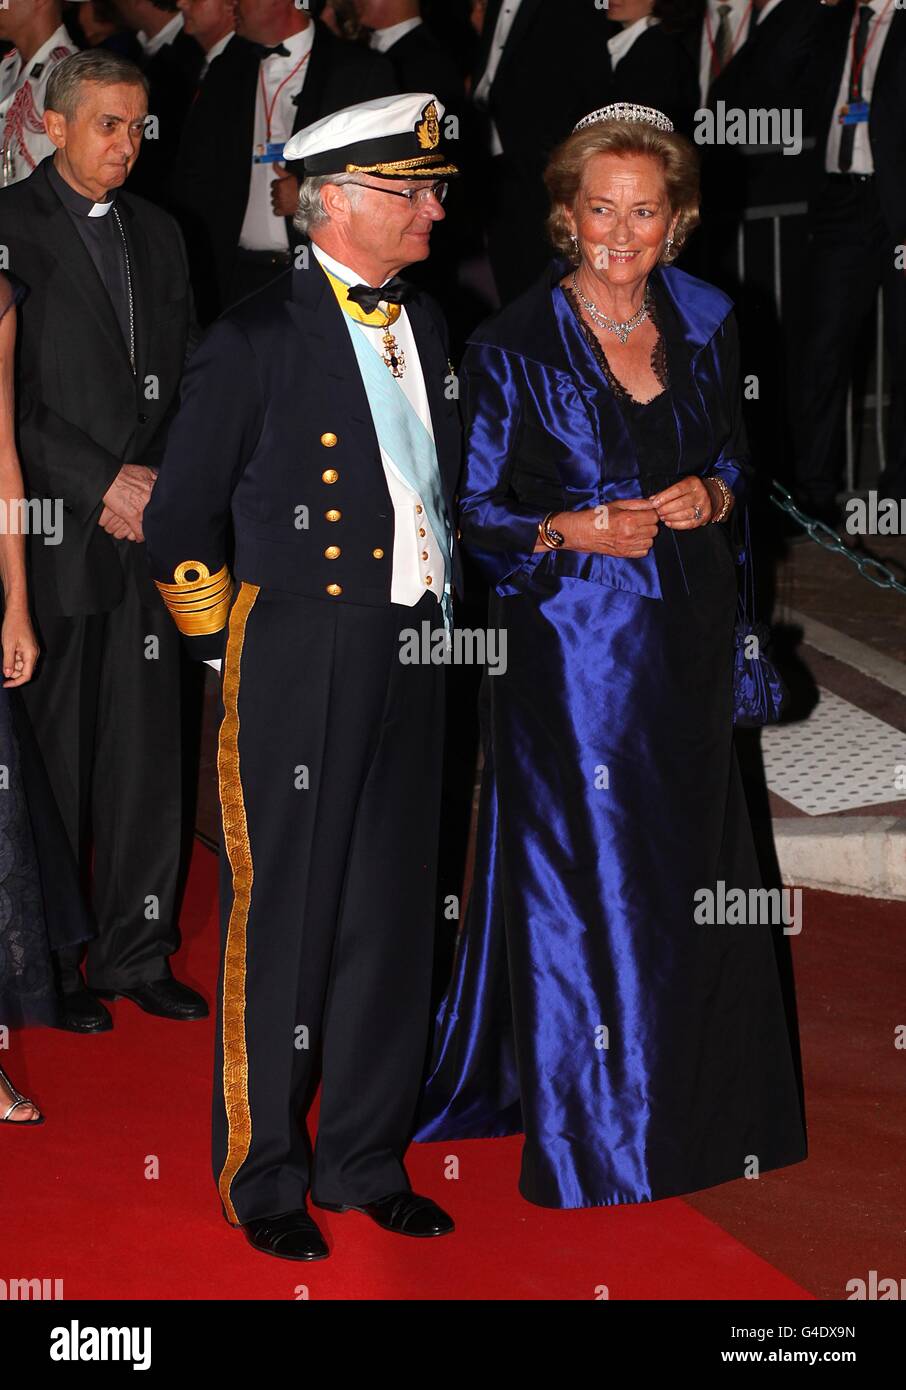 König Albert II. Und Königin Paola von Belgien kommen zum offiziellen Abendessen für Prinz Albert II. Von Monaco und Charlene Wittstock im Opernhaus von Monte Carlo. Stockfoto